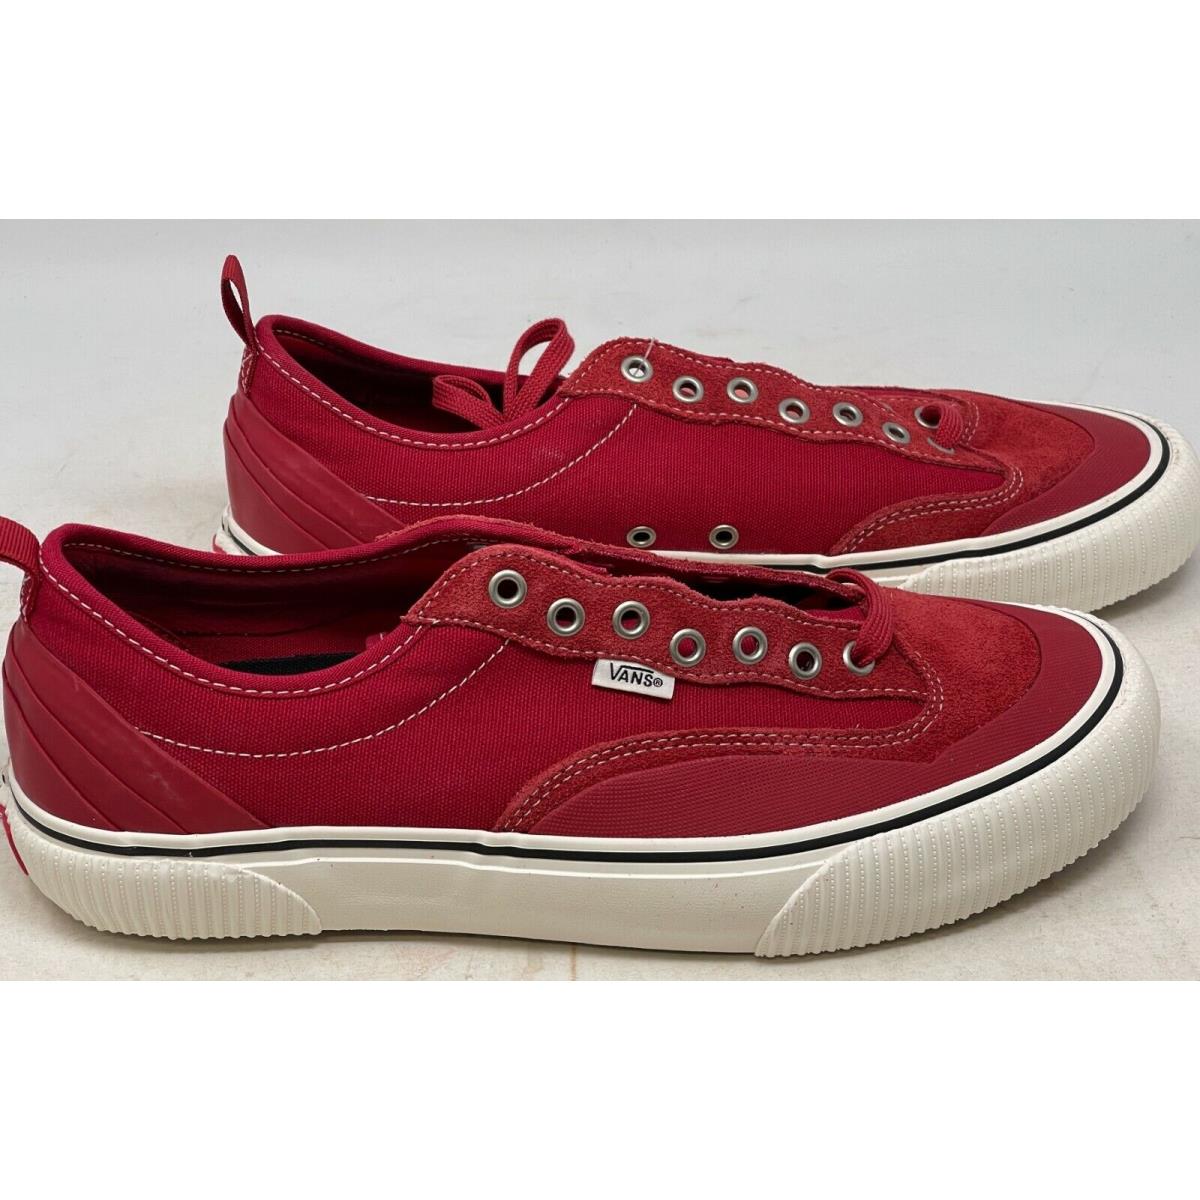 Vans Destruct Sf Chili Pepper Red Skate Shoe Men s Size 11.5 Noboxlid